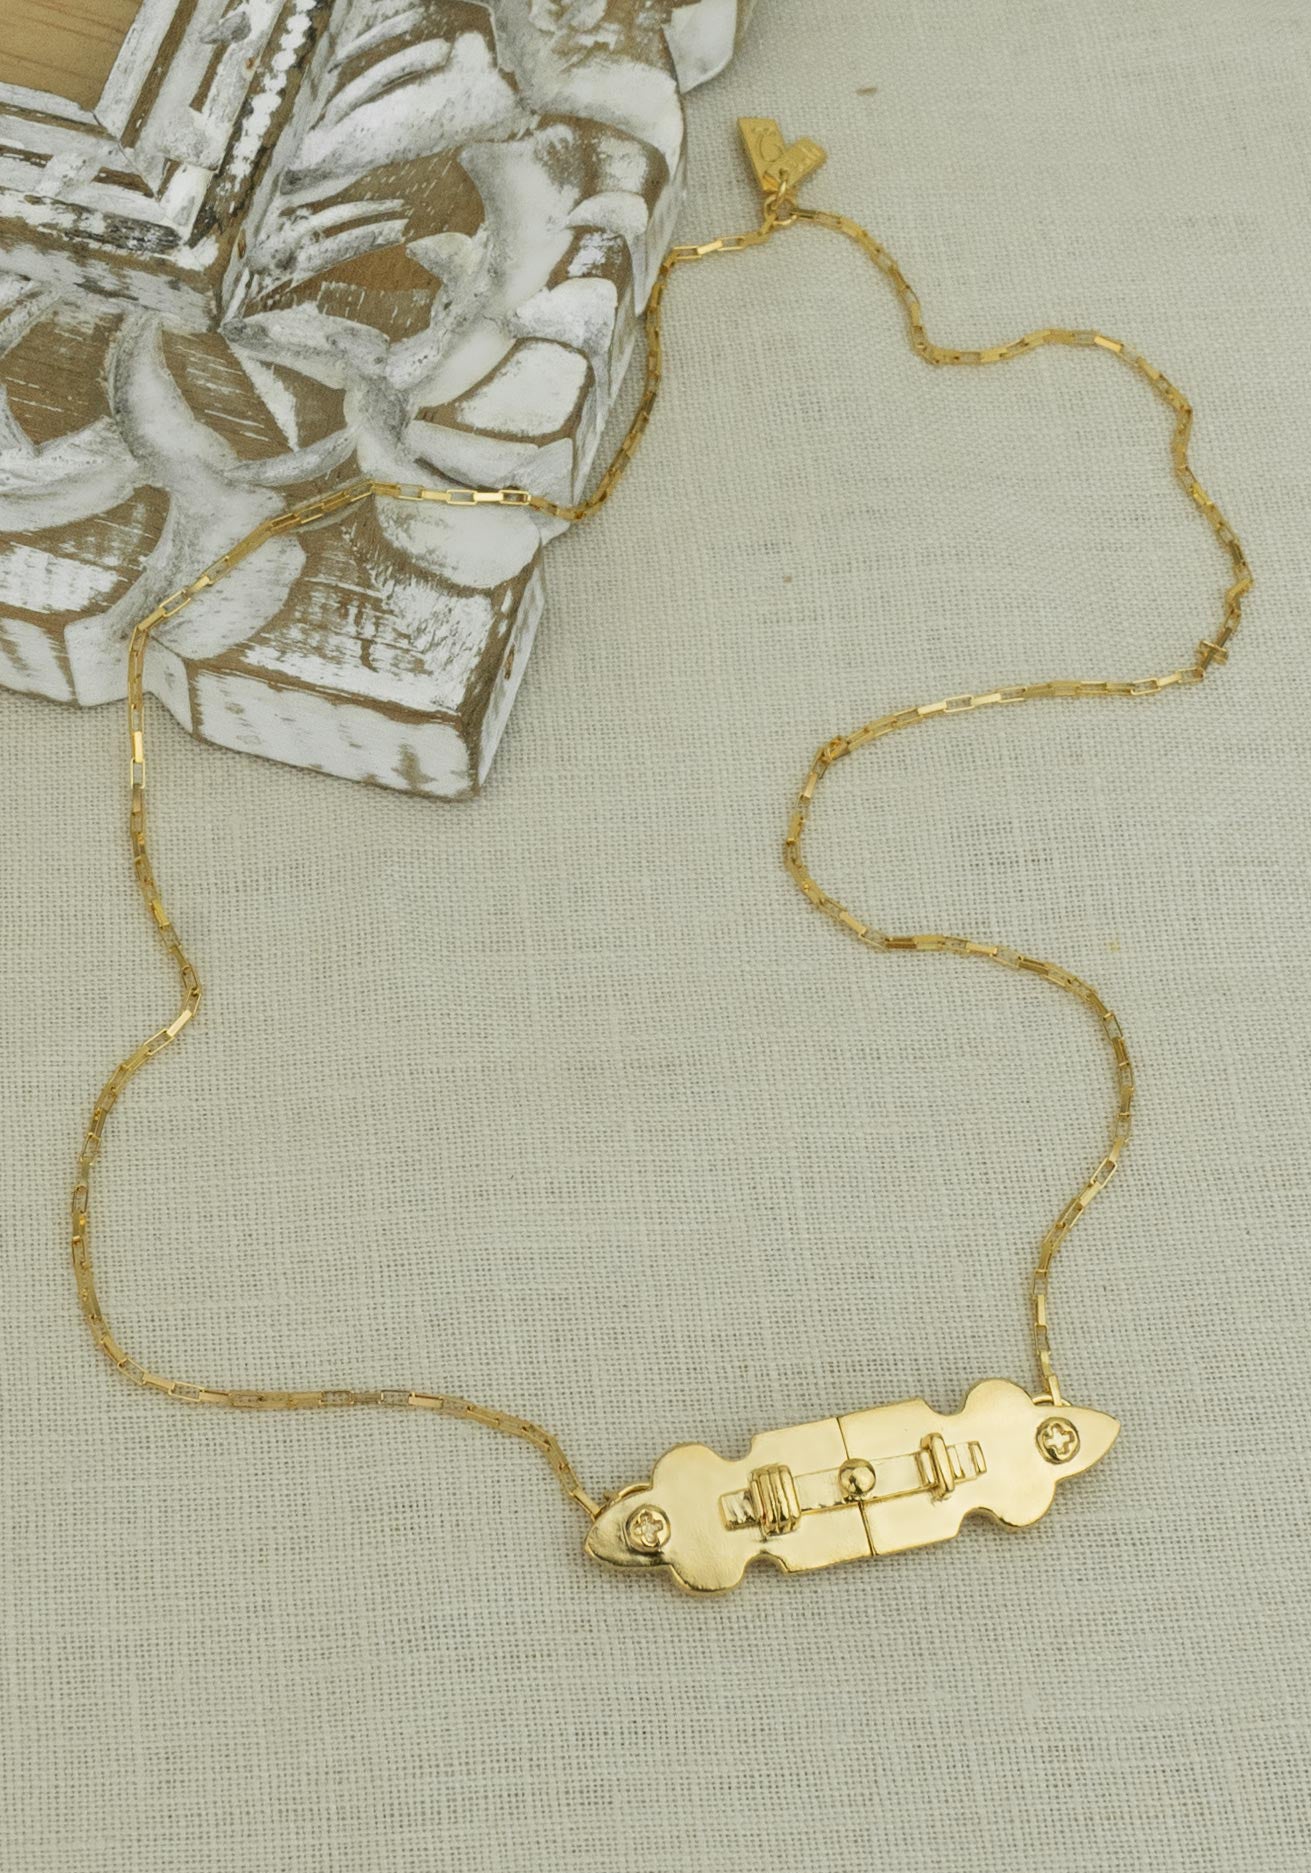 Slide Lock Necklace